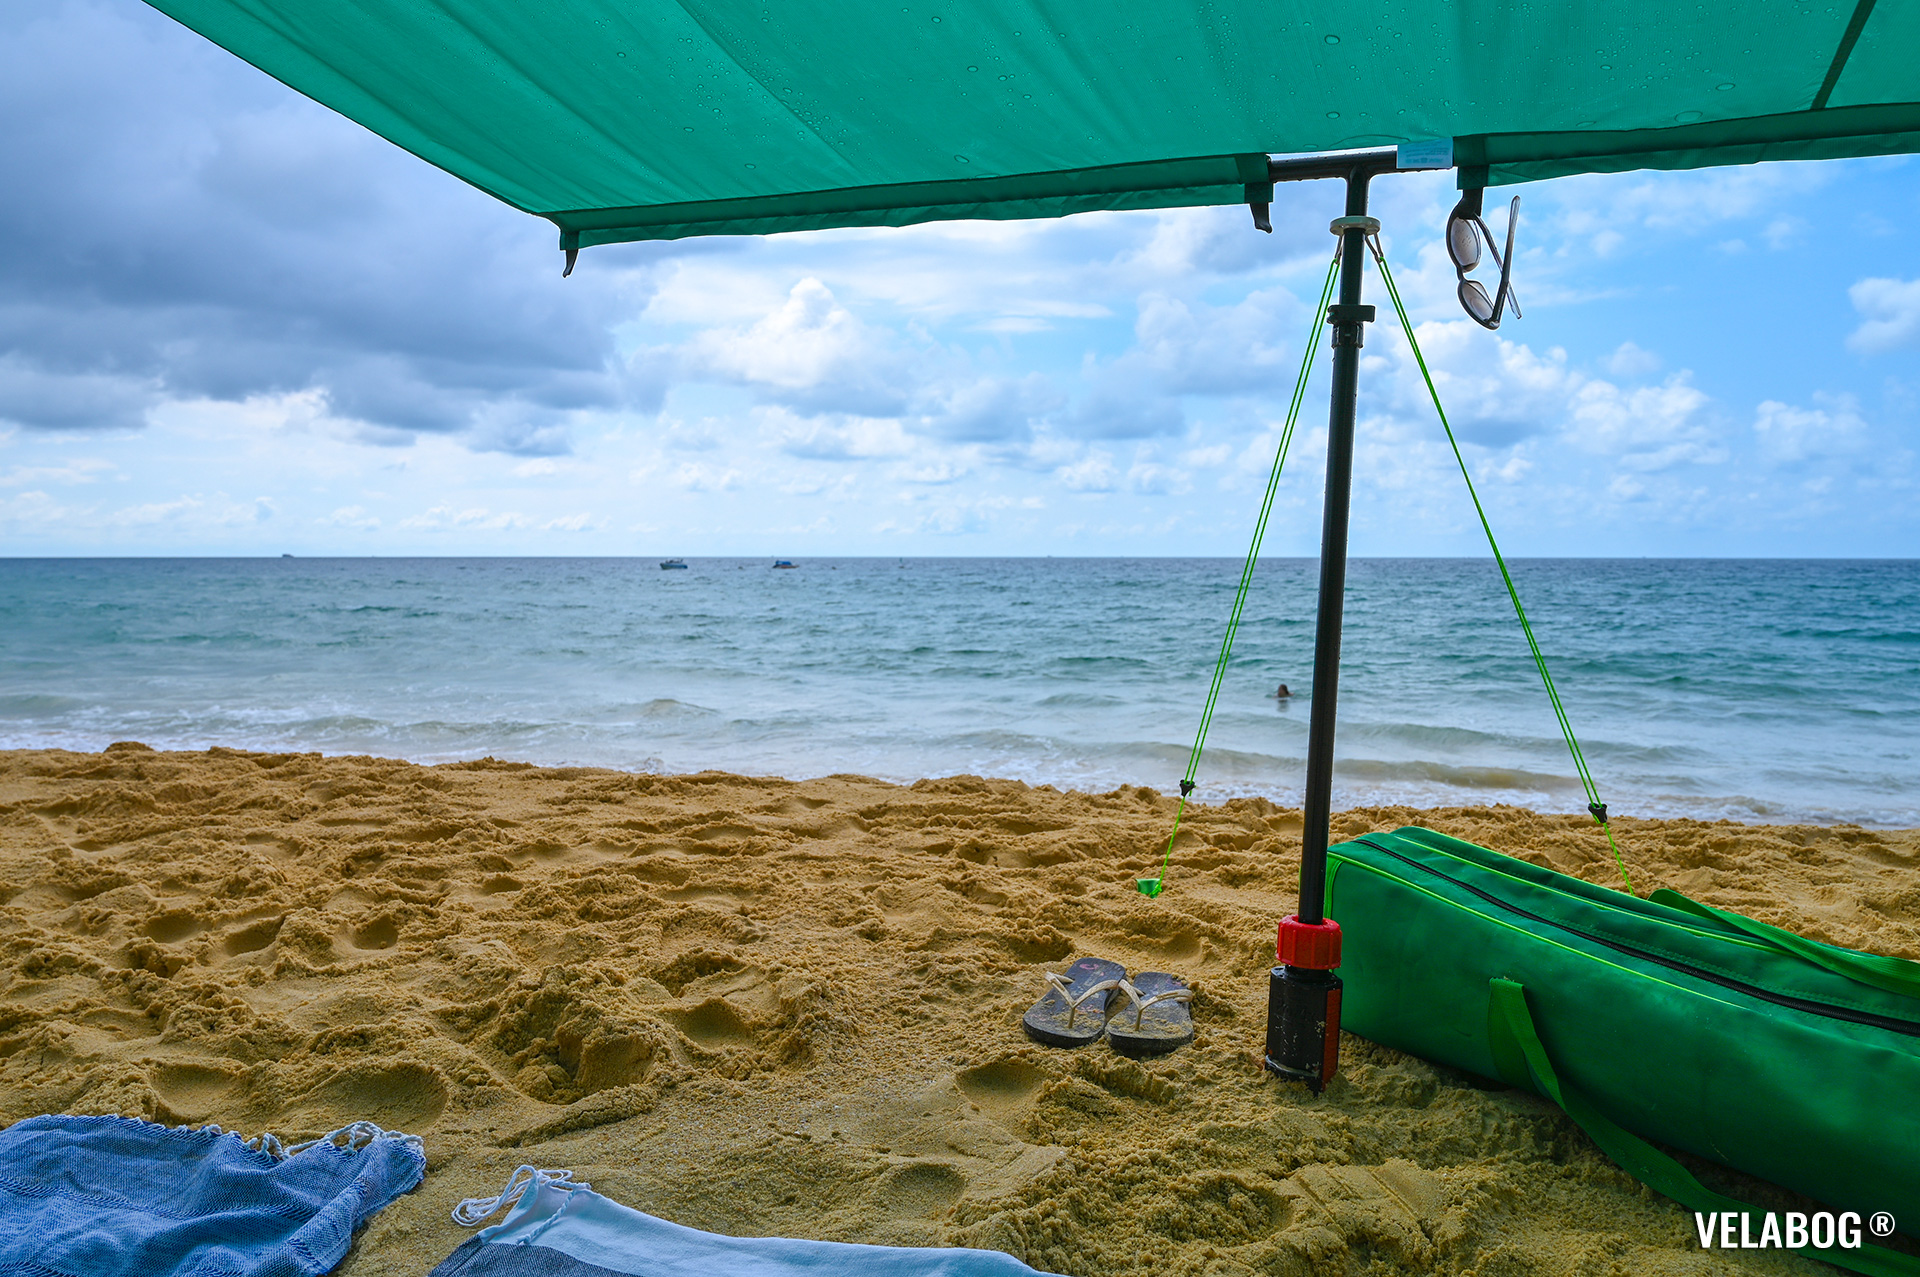 Strand Sonnensegel Strandzelt Velabog Breeze, grün. Bester Sonnenschutz Strand. Auch bei einem kurzen Regenschauer. Test Strand Sonnensegel Aufbauoption - kein, leichter oder böiger Wind. Ansicht von unten. Details.